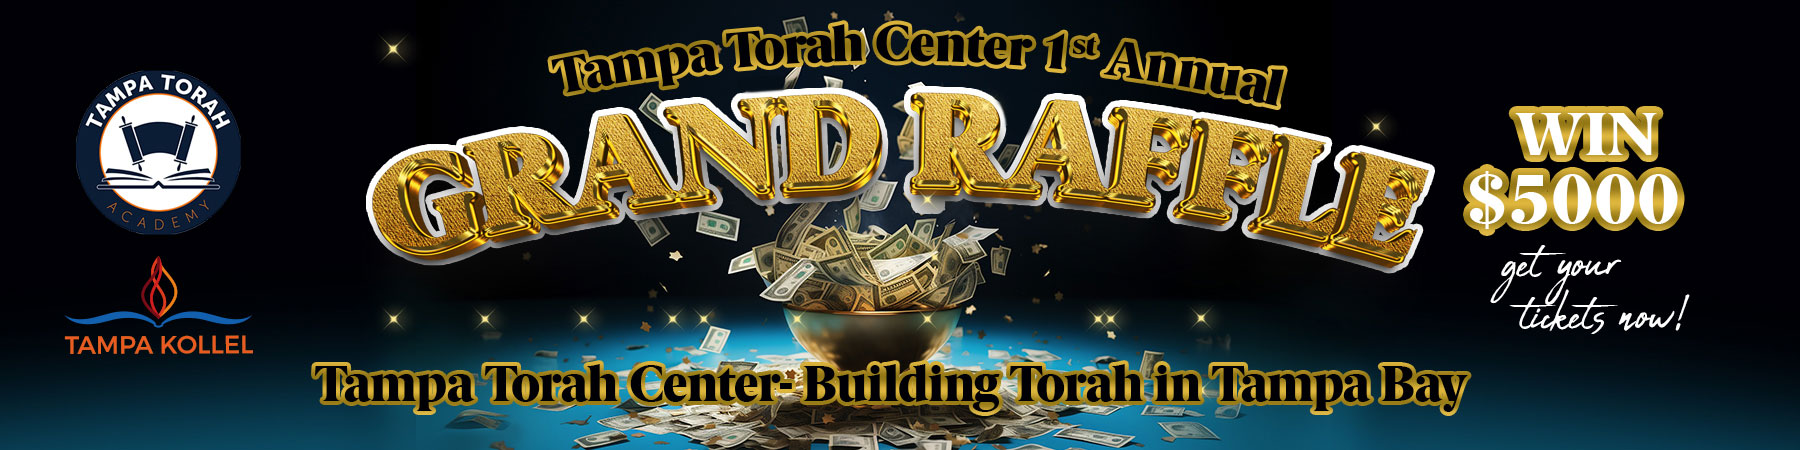 Tampa Torah Center